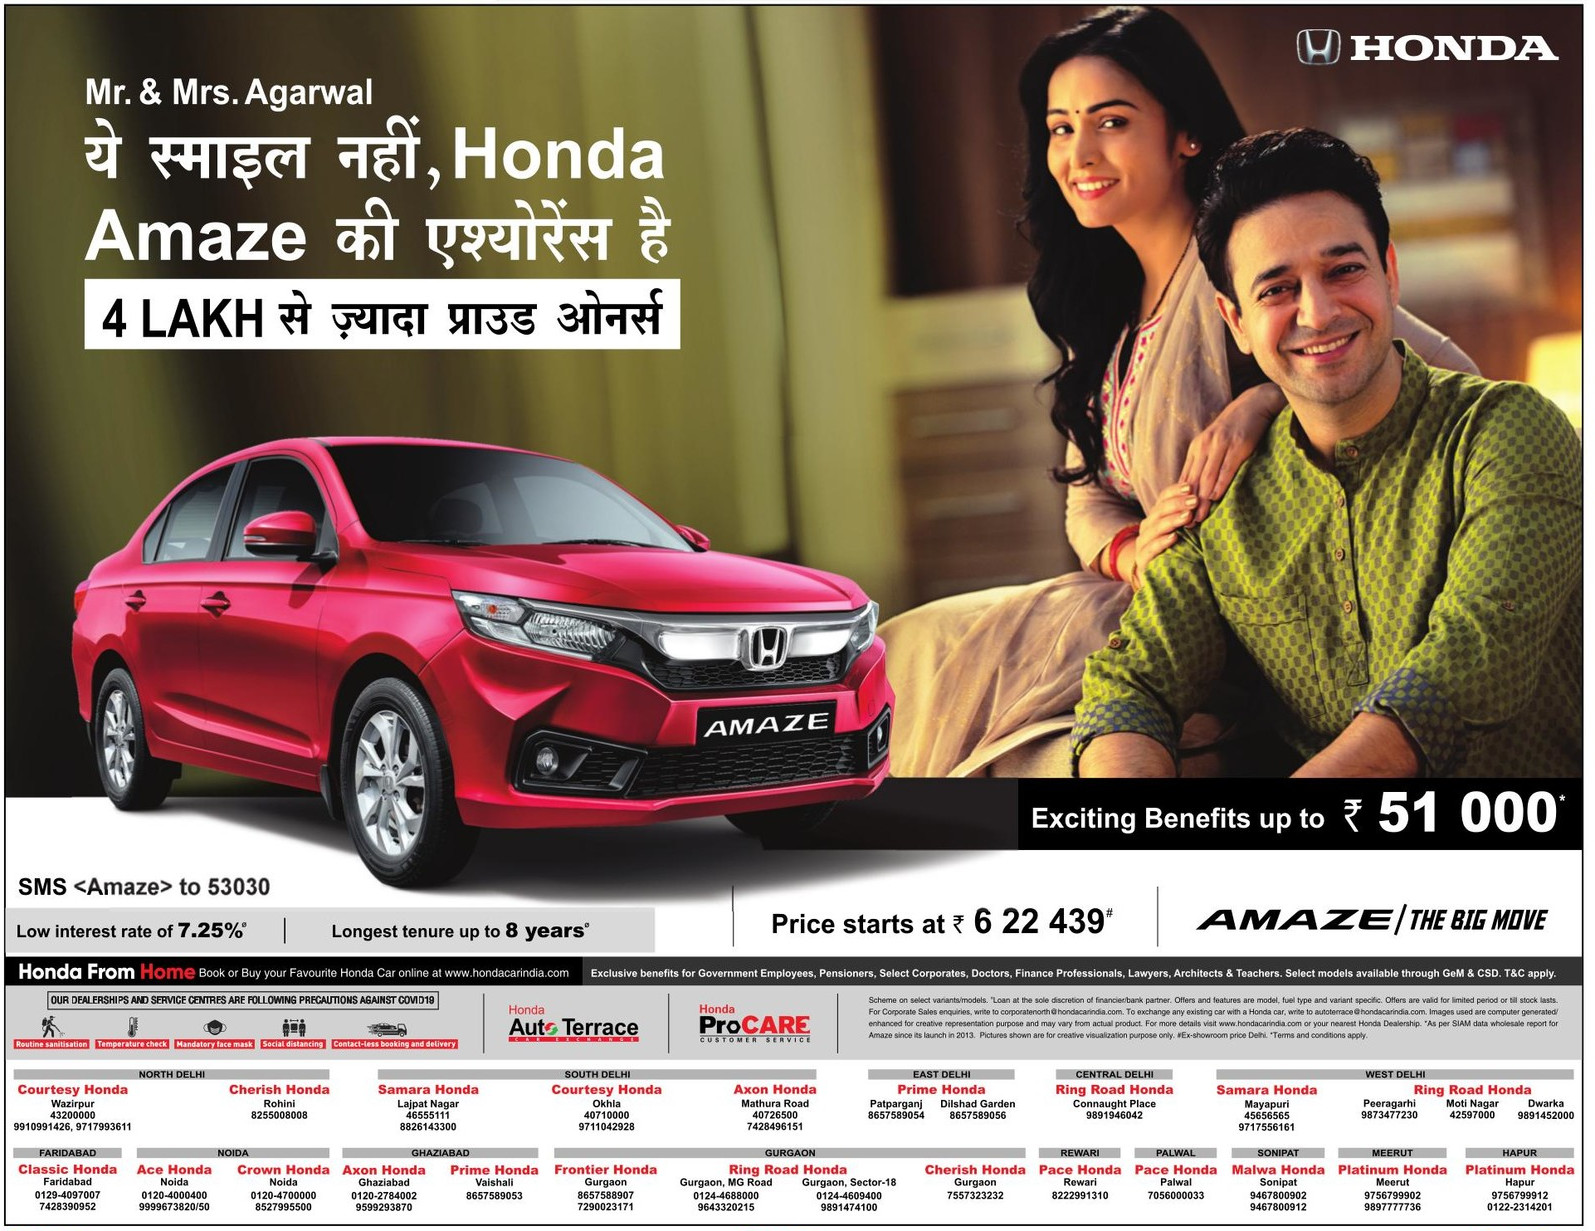 honda-amaze-exciting-benefits-up-to-rupees-51000-ad-amar-ujala-delhi-23-06-2021